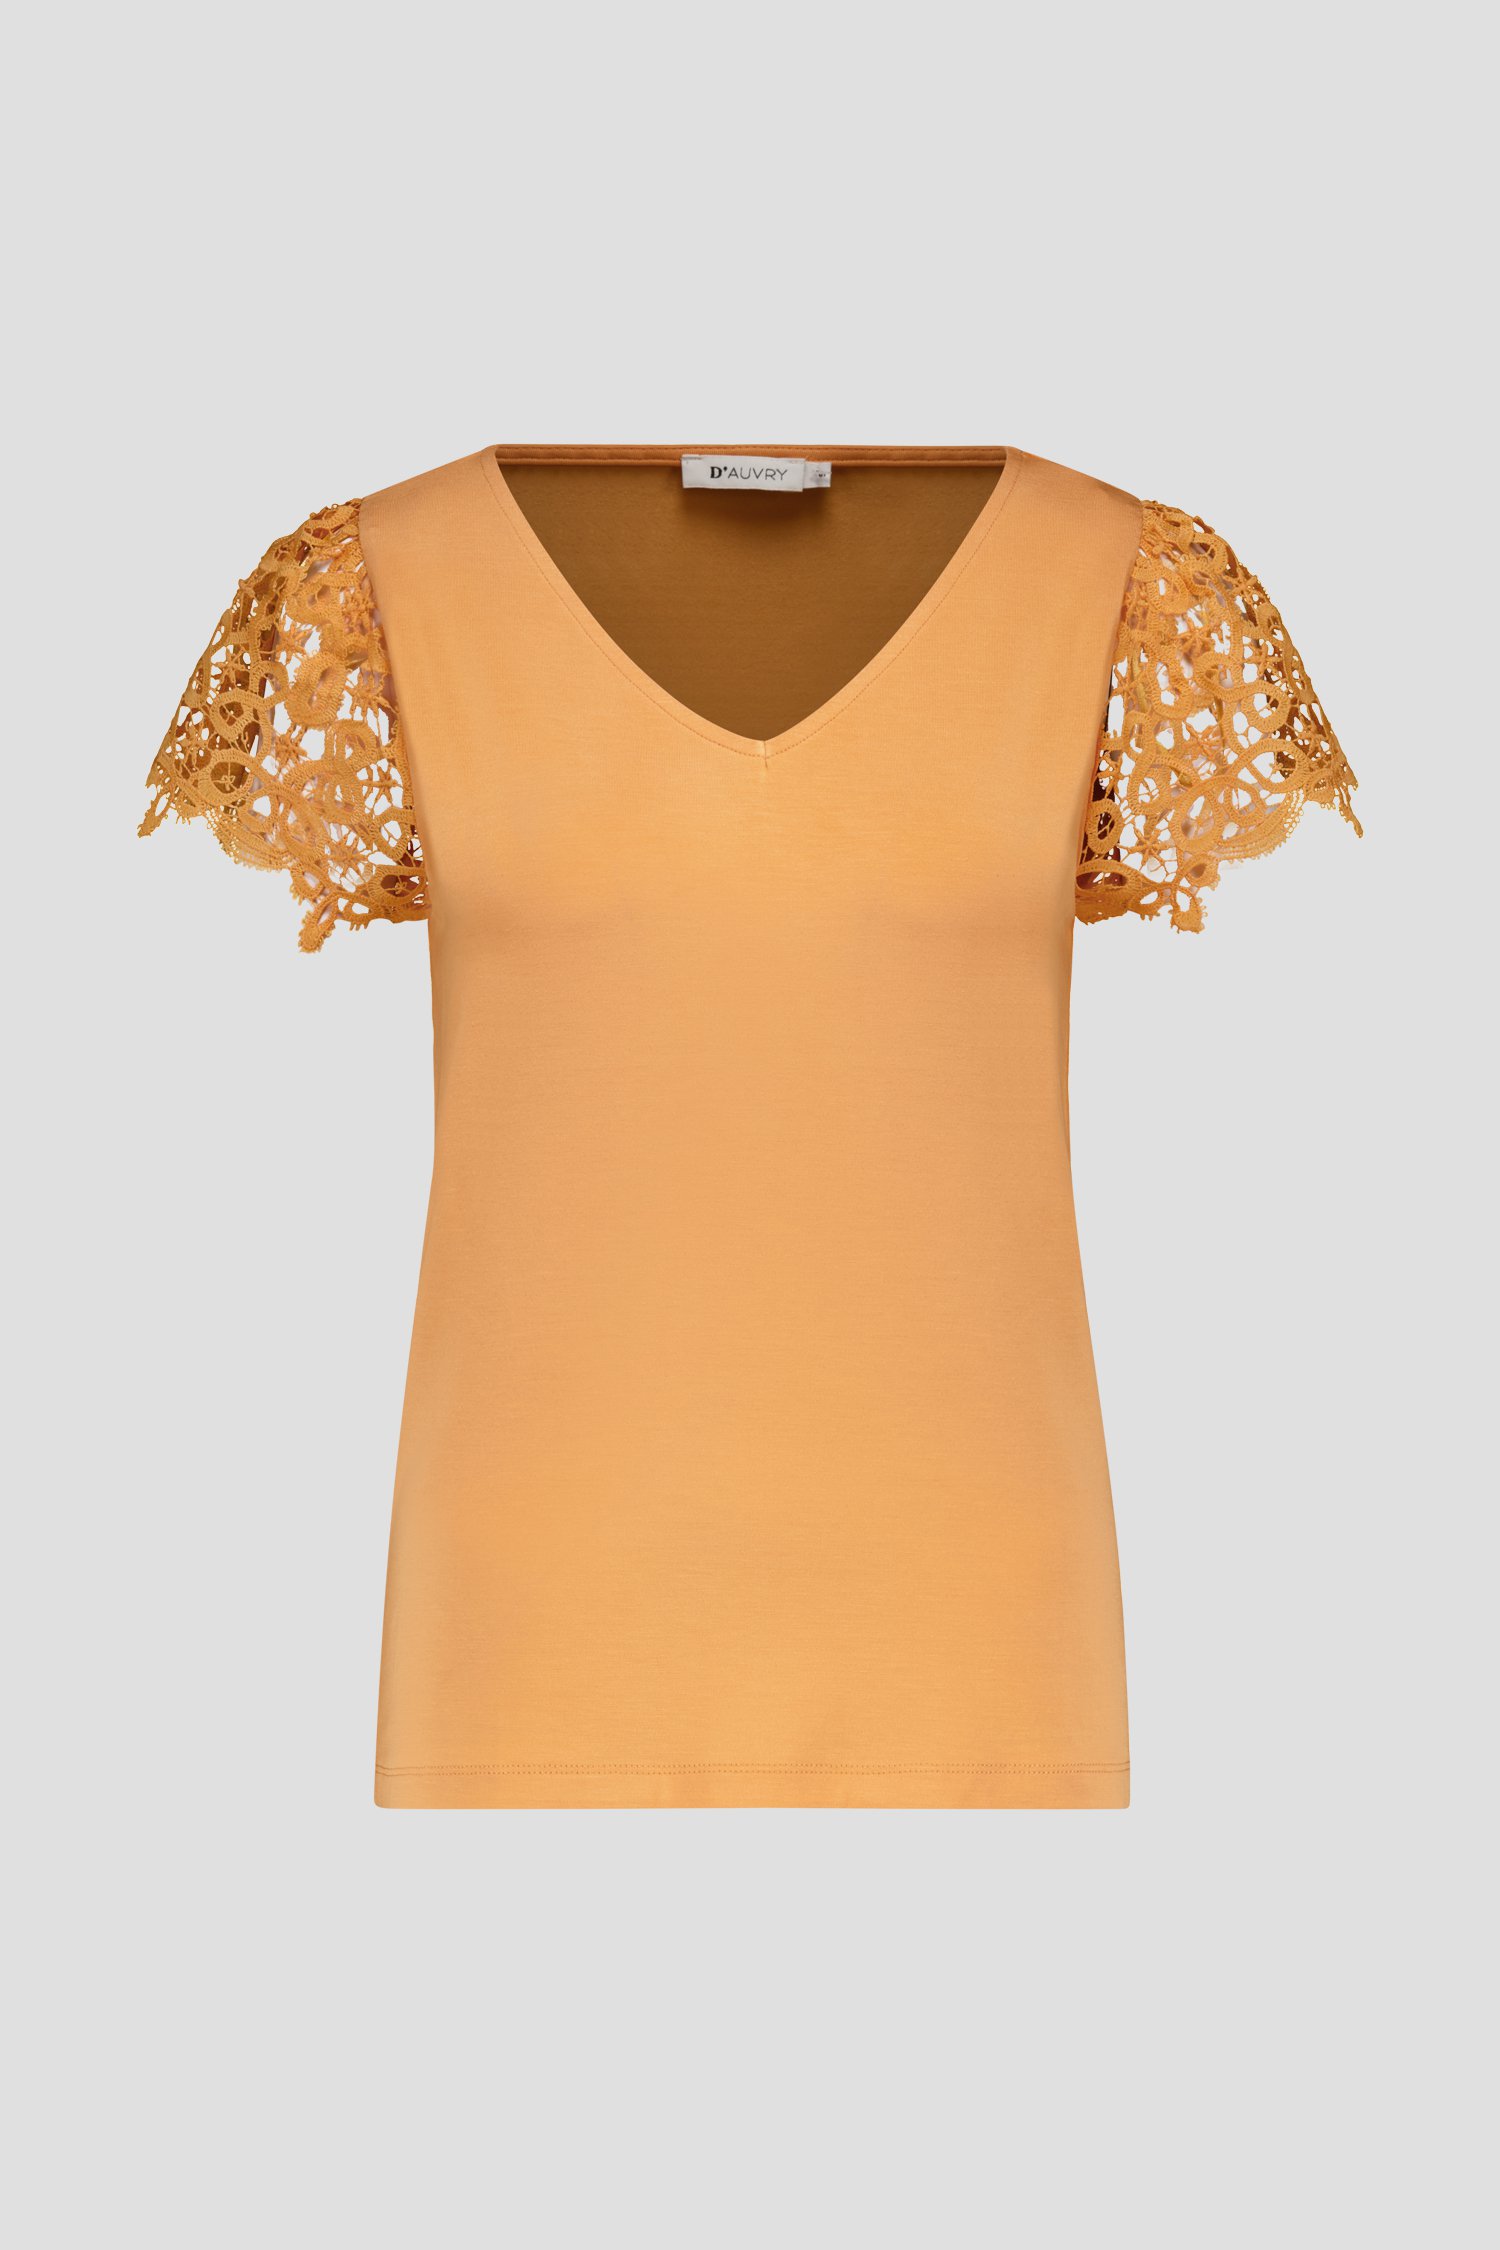 Licht oranje T-shirt met gehaakte kapmouwtjes van D'Auvry voor Dames